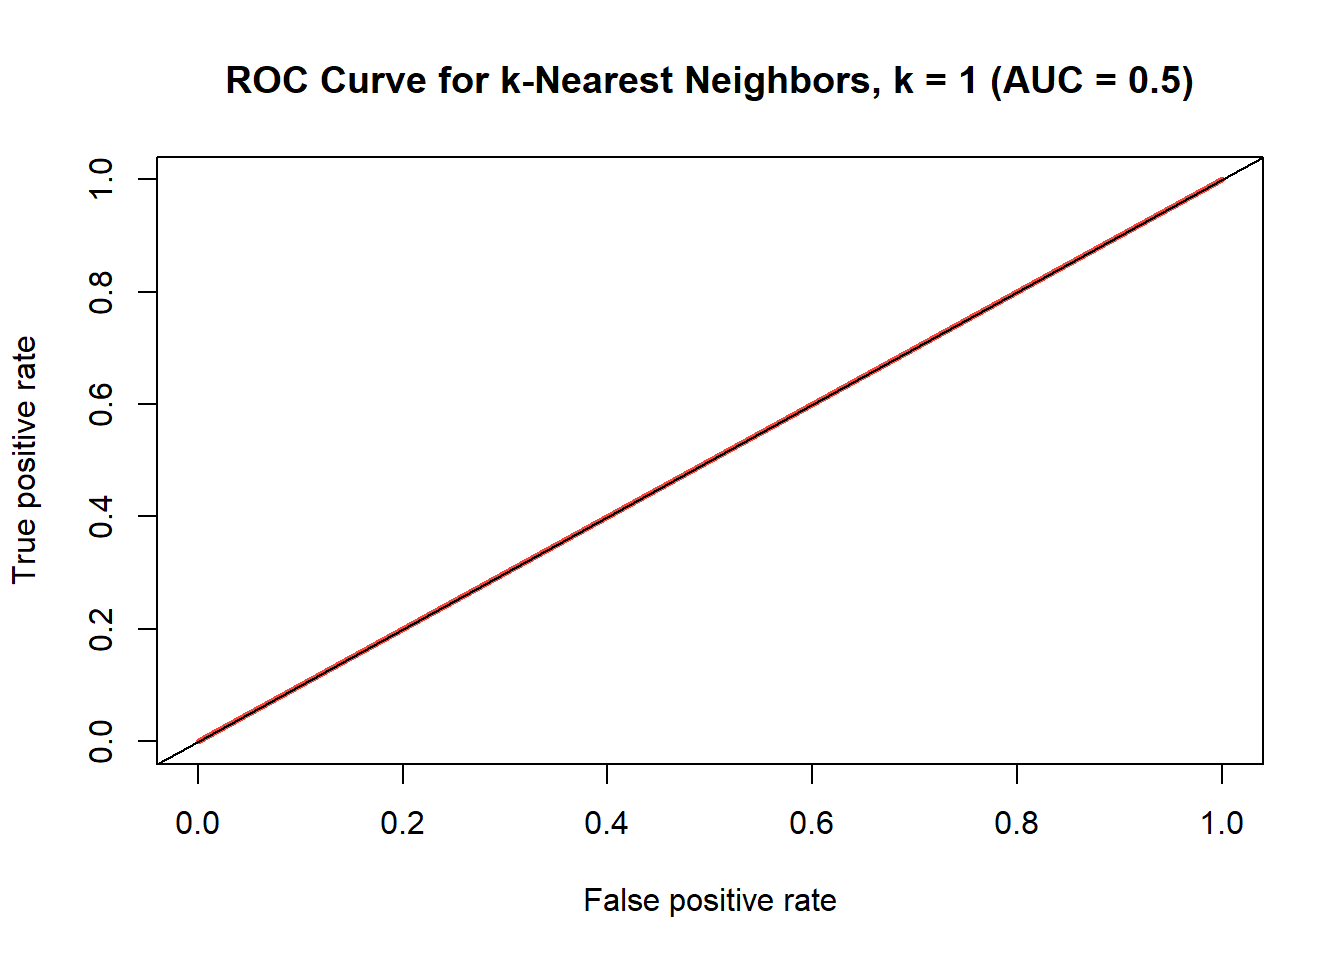 ROC curve for k-nearest neighbors model where k=1